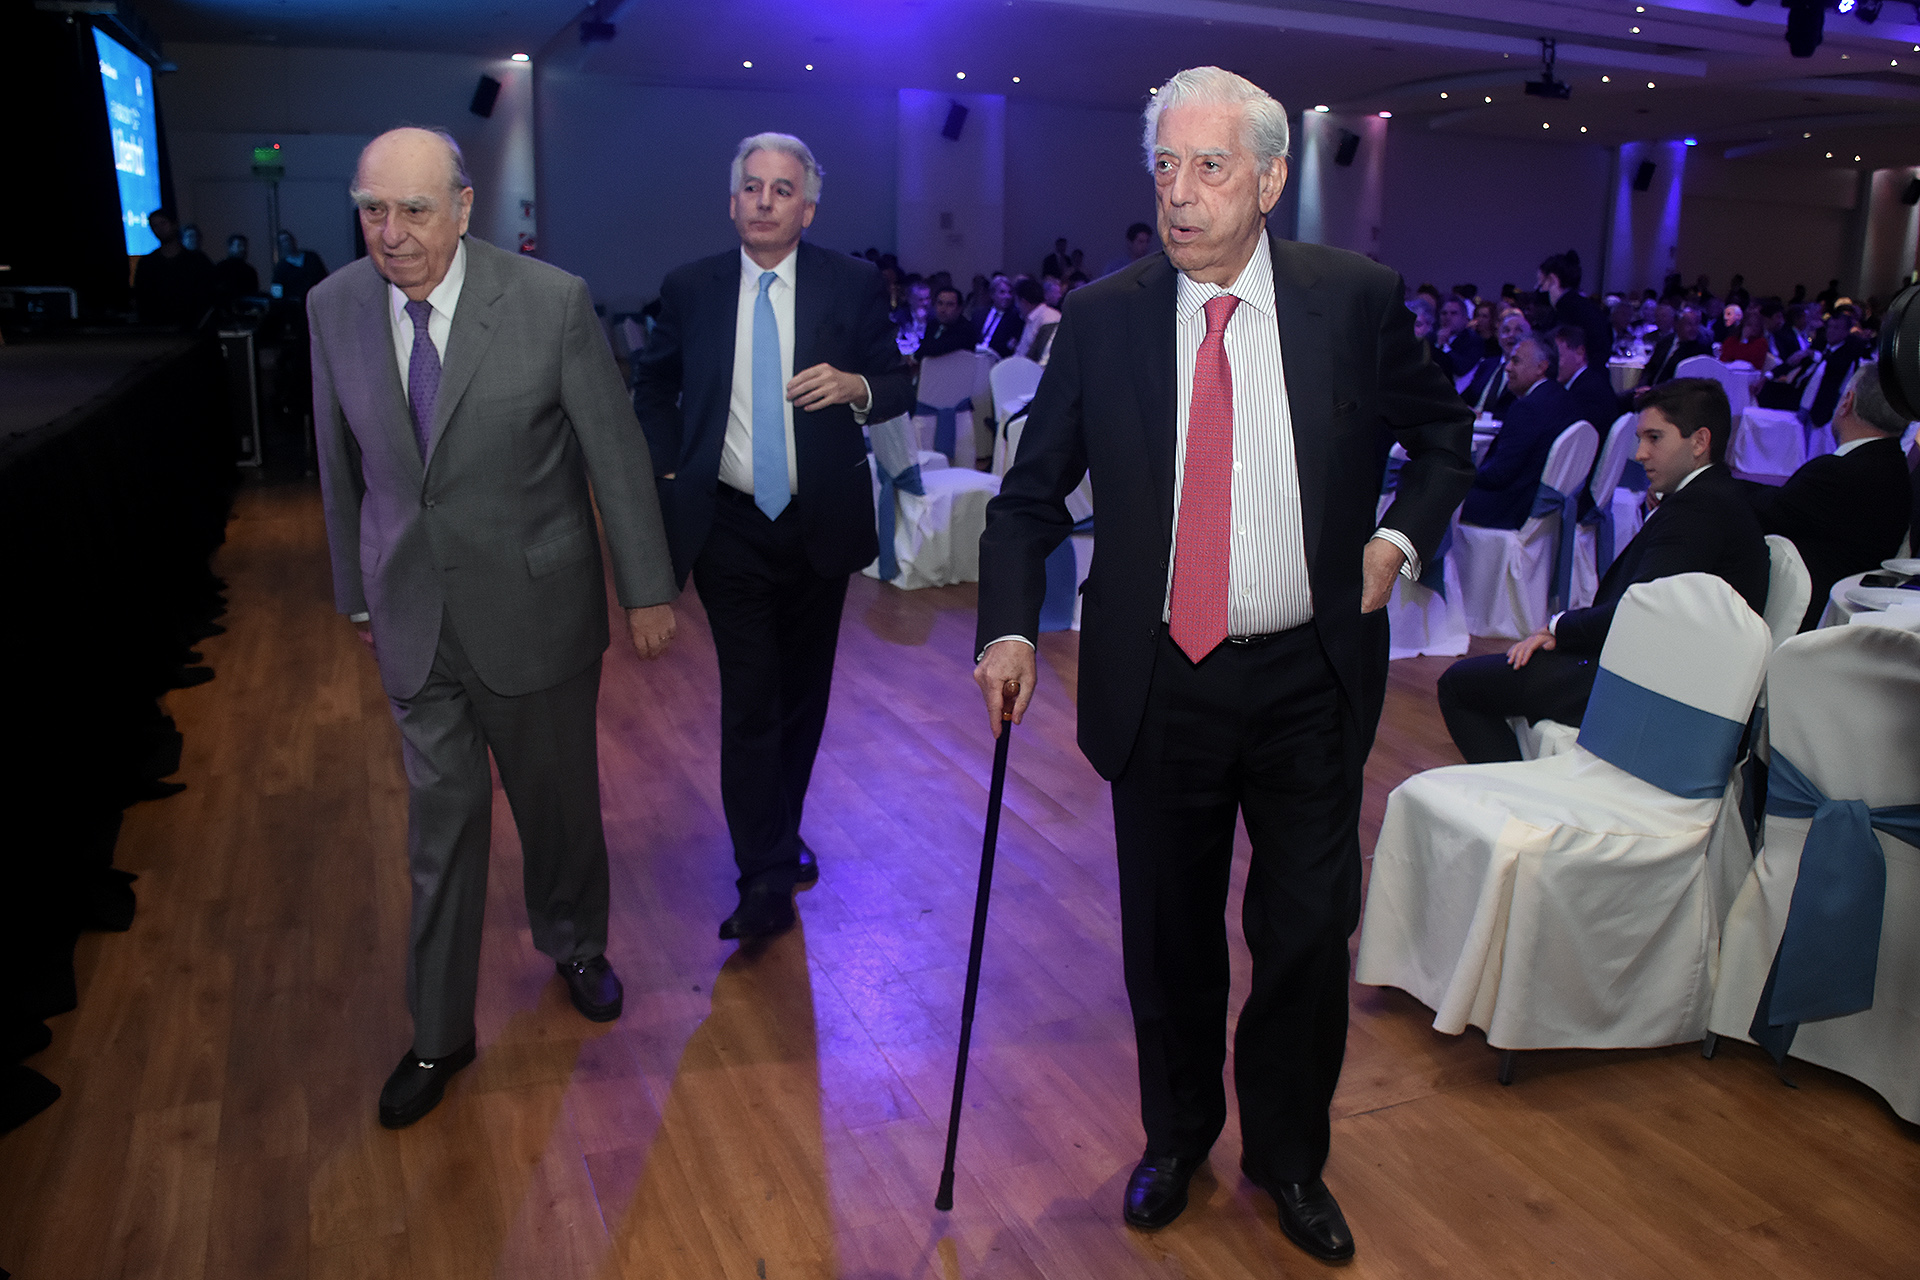 La Fundación Libertad contó con la presencia del premio Nobel de Literatura Mario Vargas Llosa y Julio María Sanguinetti, ex presidente de Uruguay